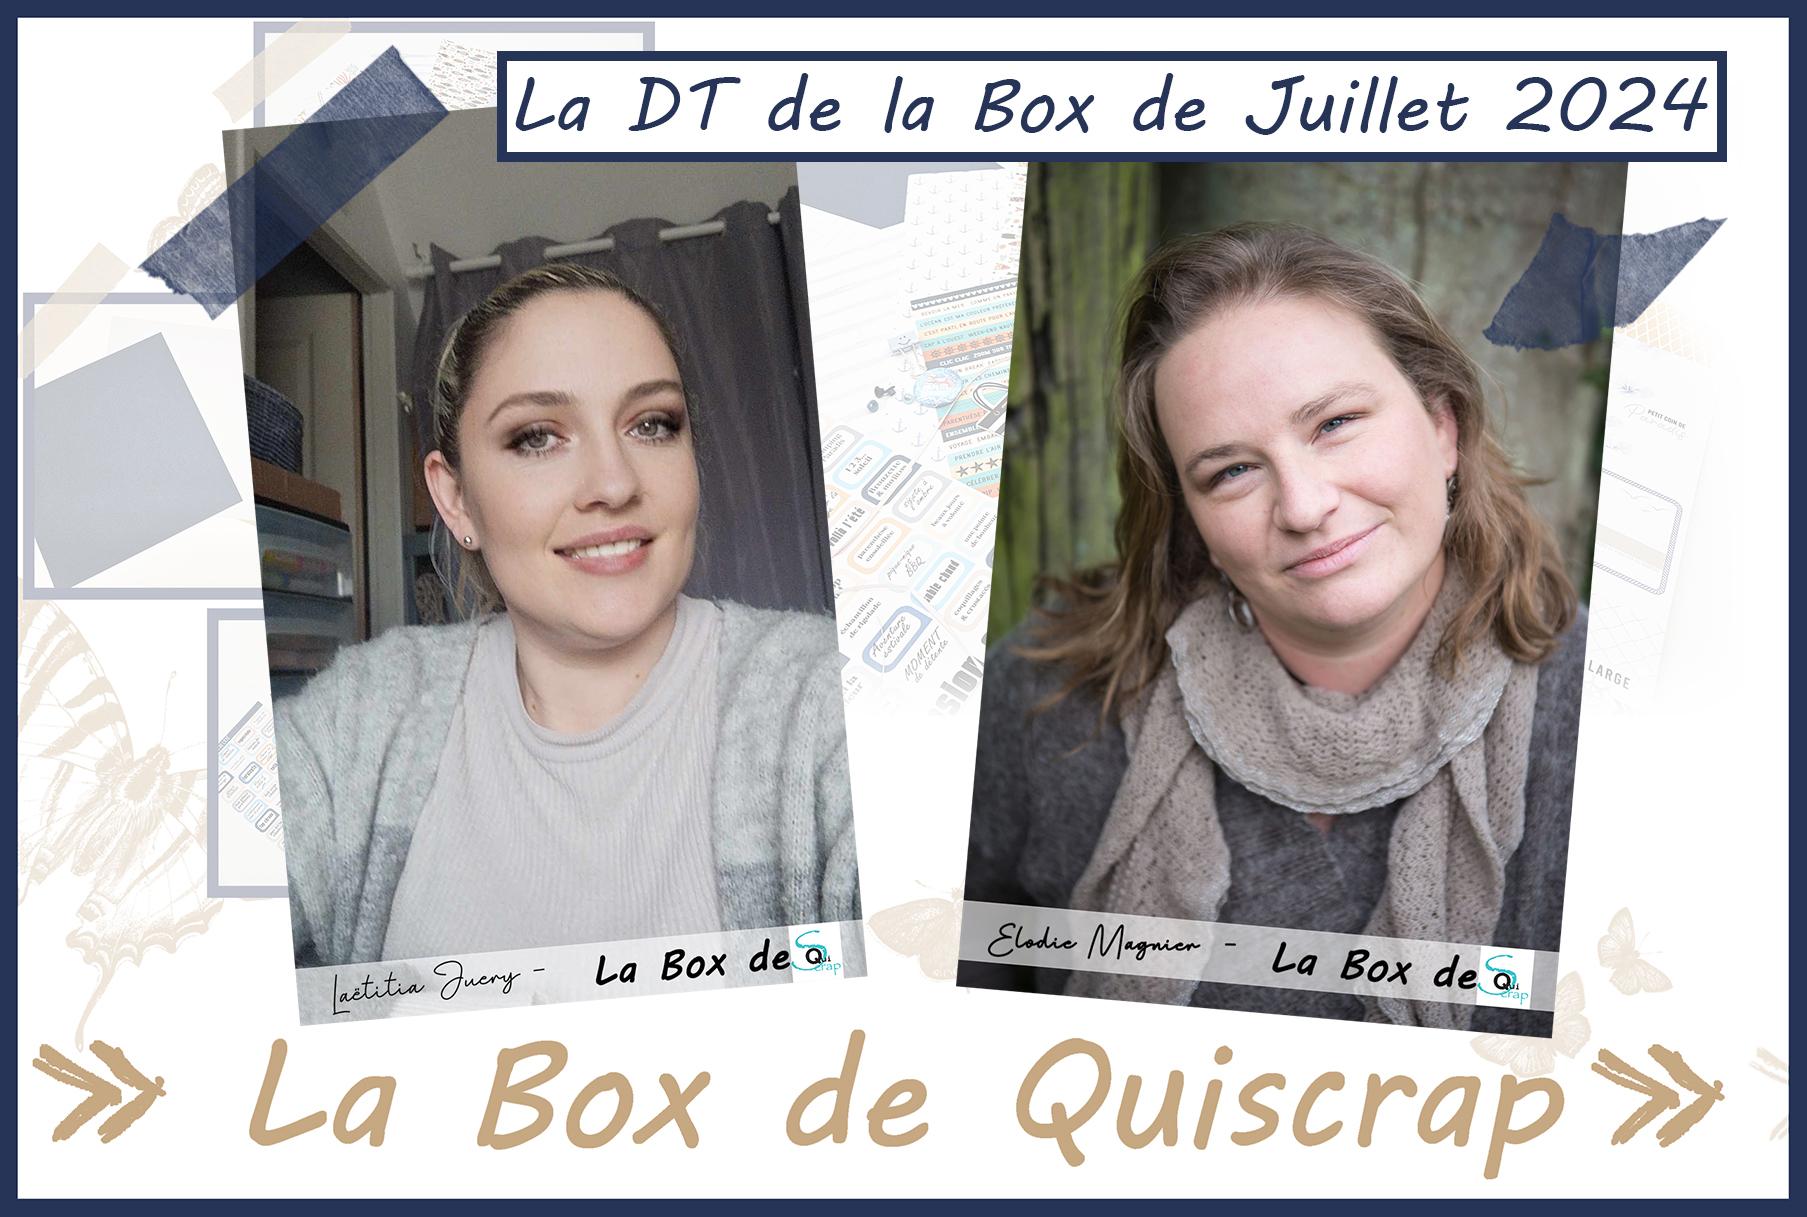 Lire la suite à propos de l’article La DT de la Box de Juillet 2024: Elodie Magnier et Laëtitia Juery